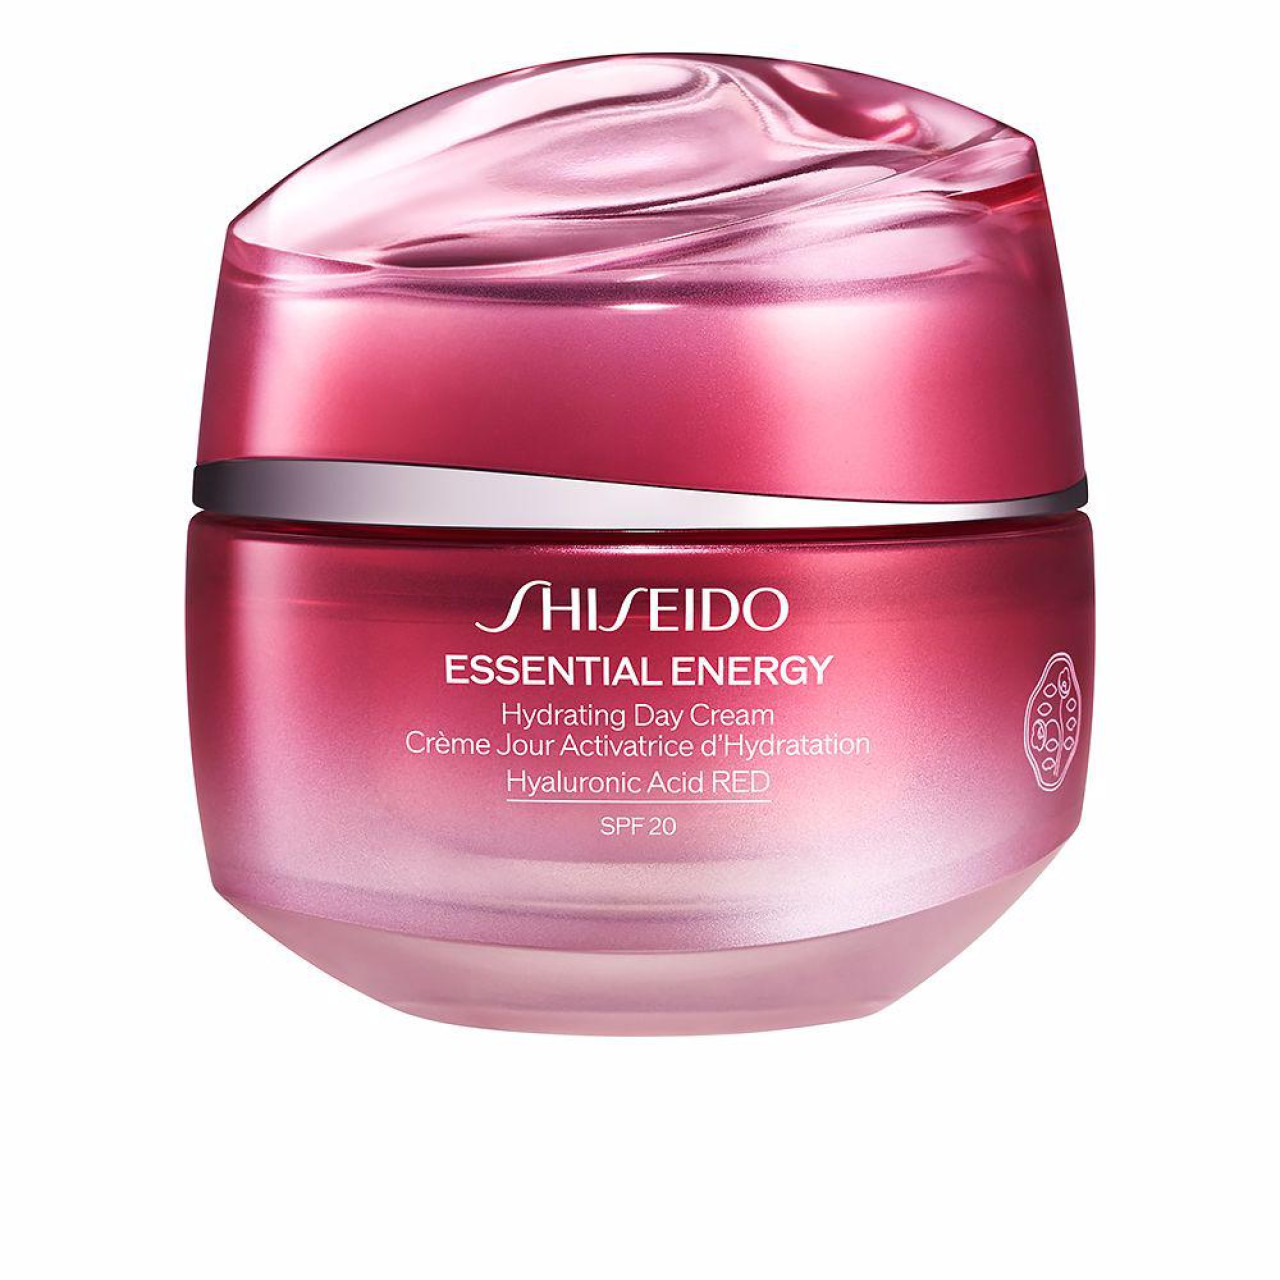 Shiseido essential energy 2.0 cr 50ml